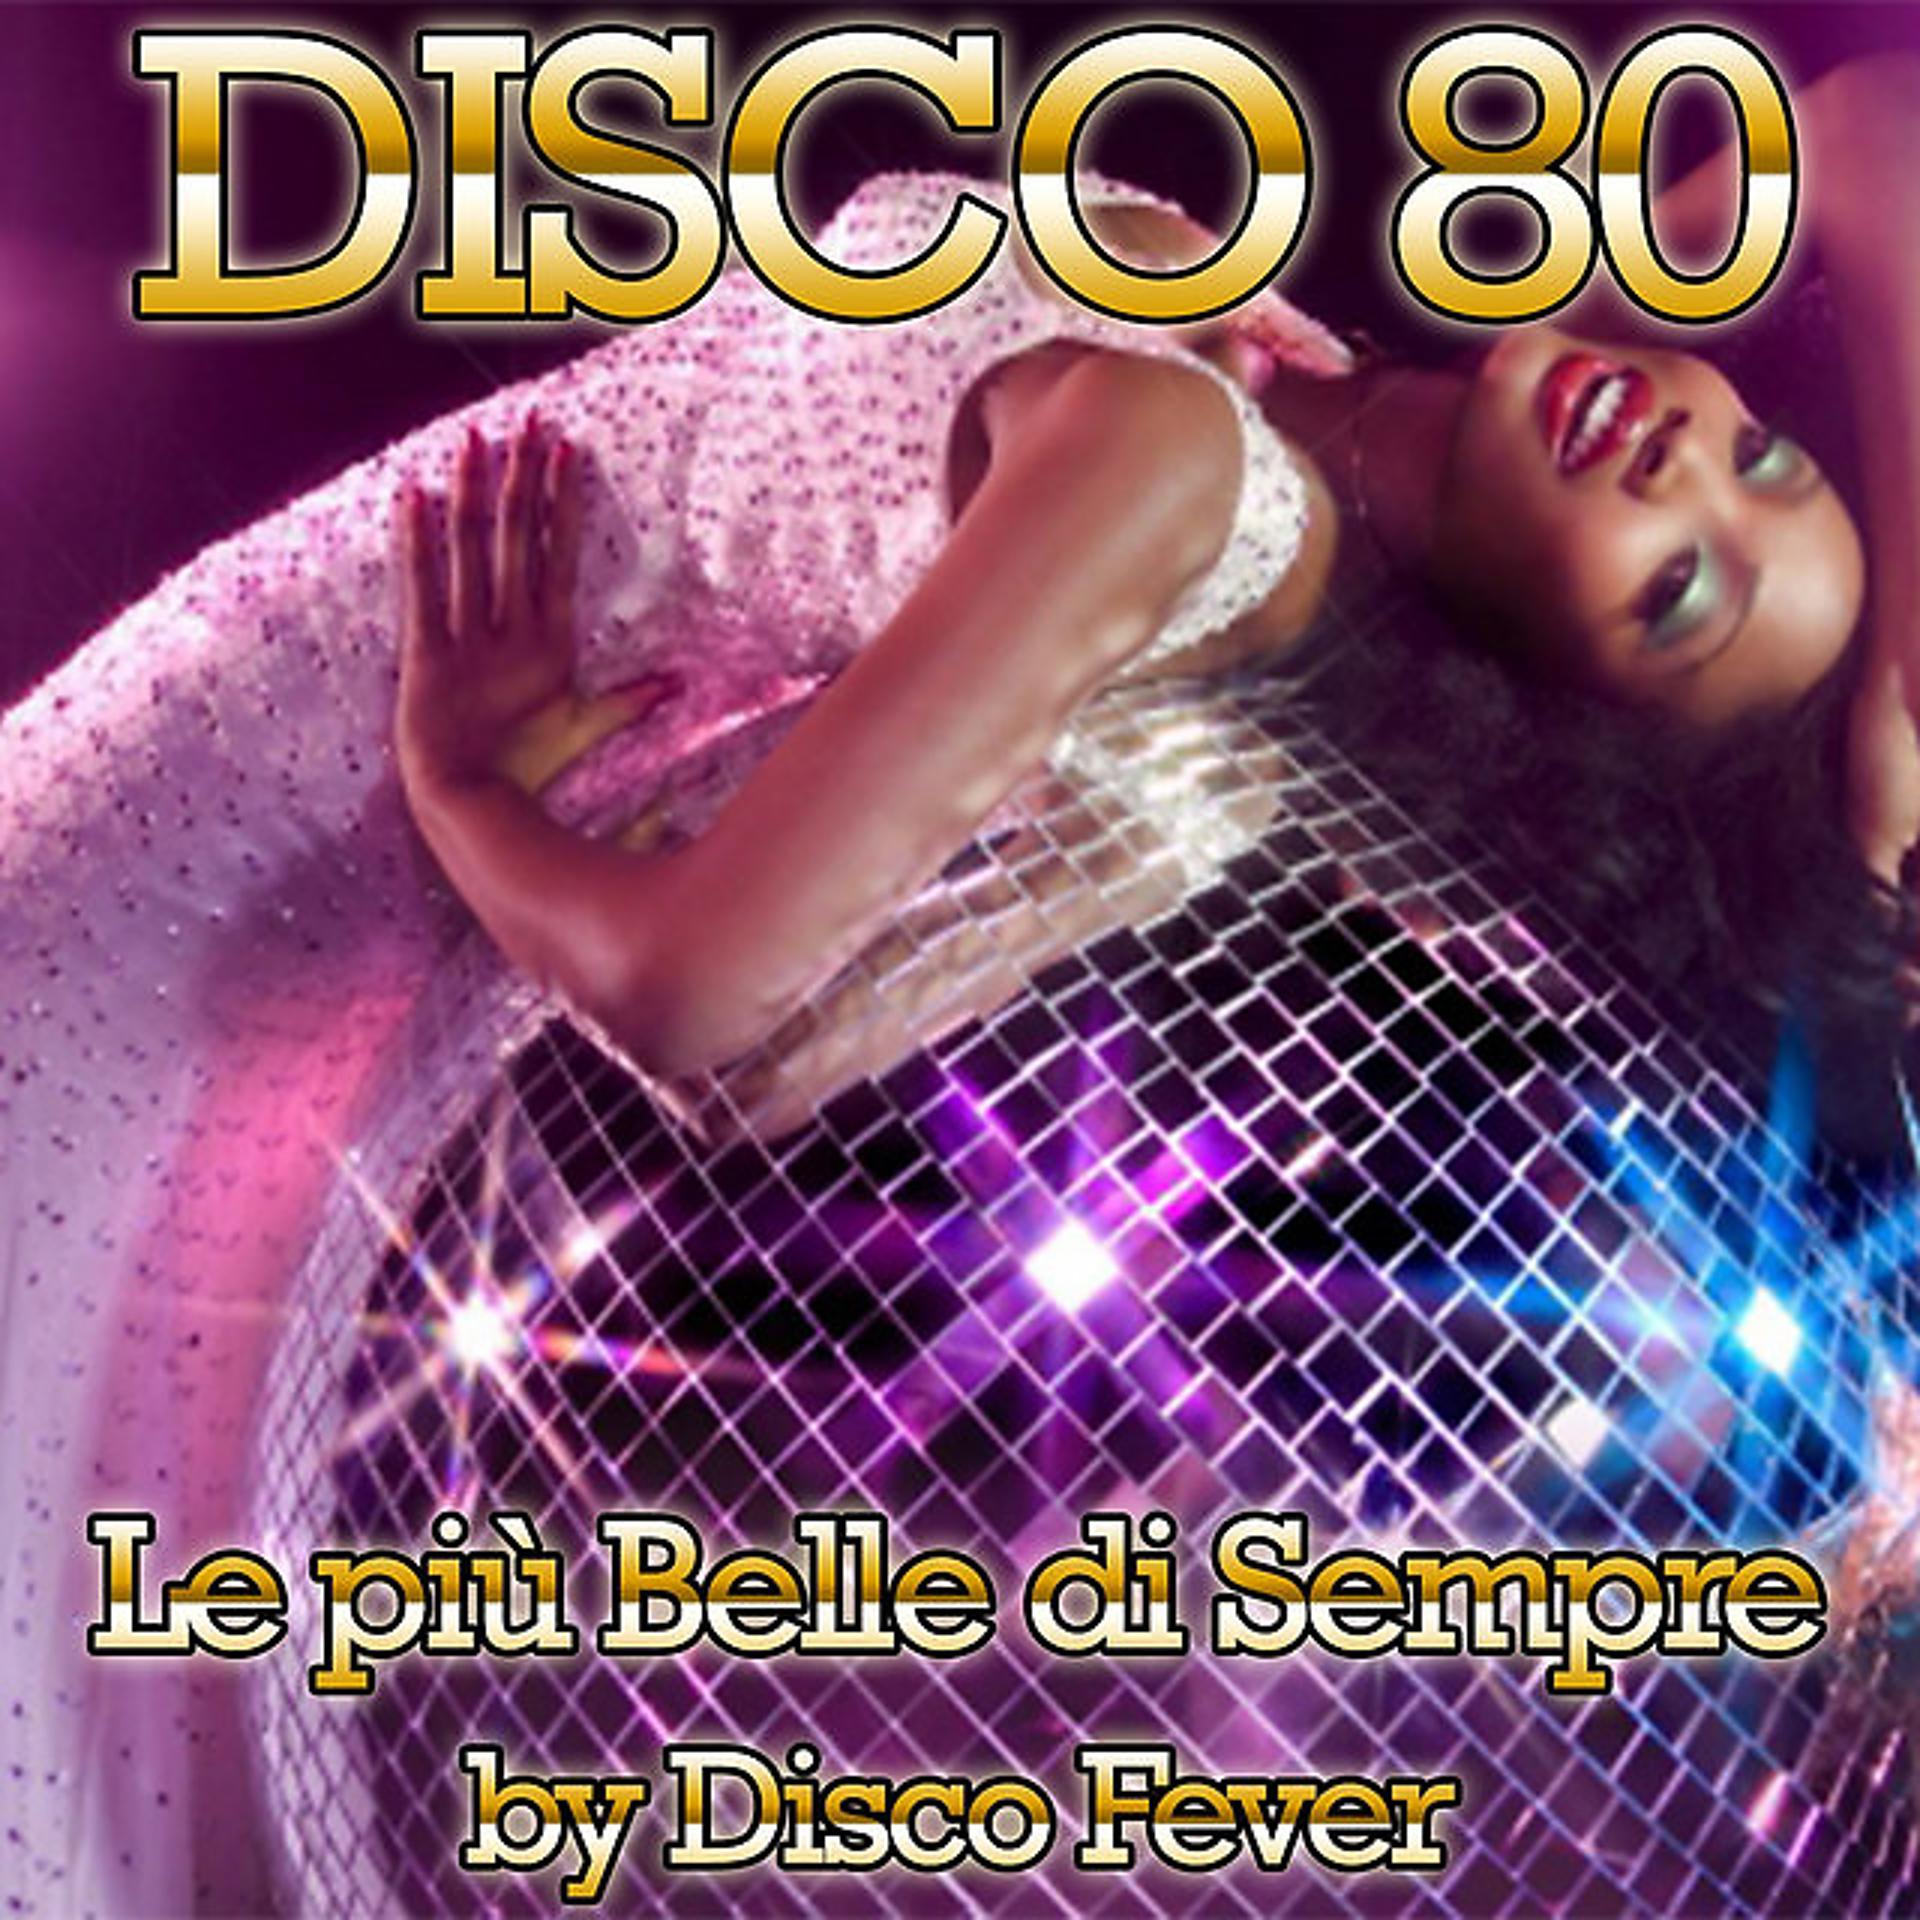 Disco обложка. Disco обложки альбомов. Диско 80. Disco 80 обложка. Новинки песен диско